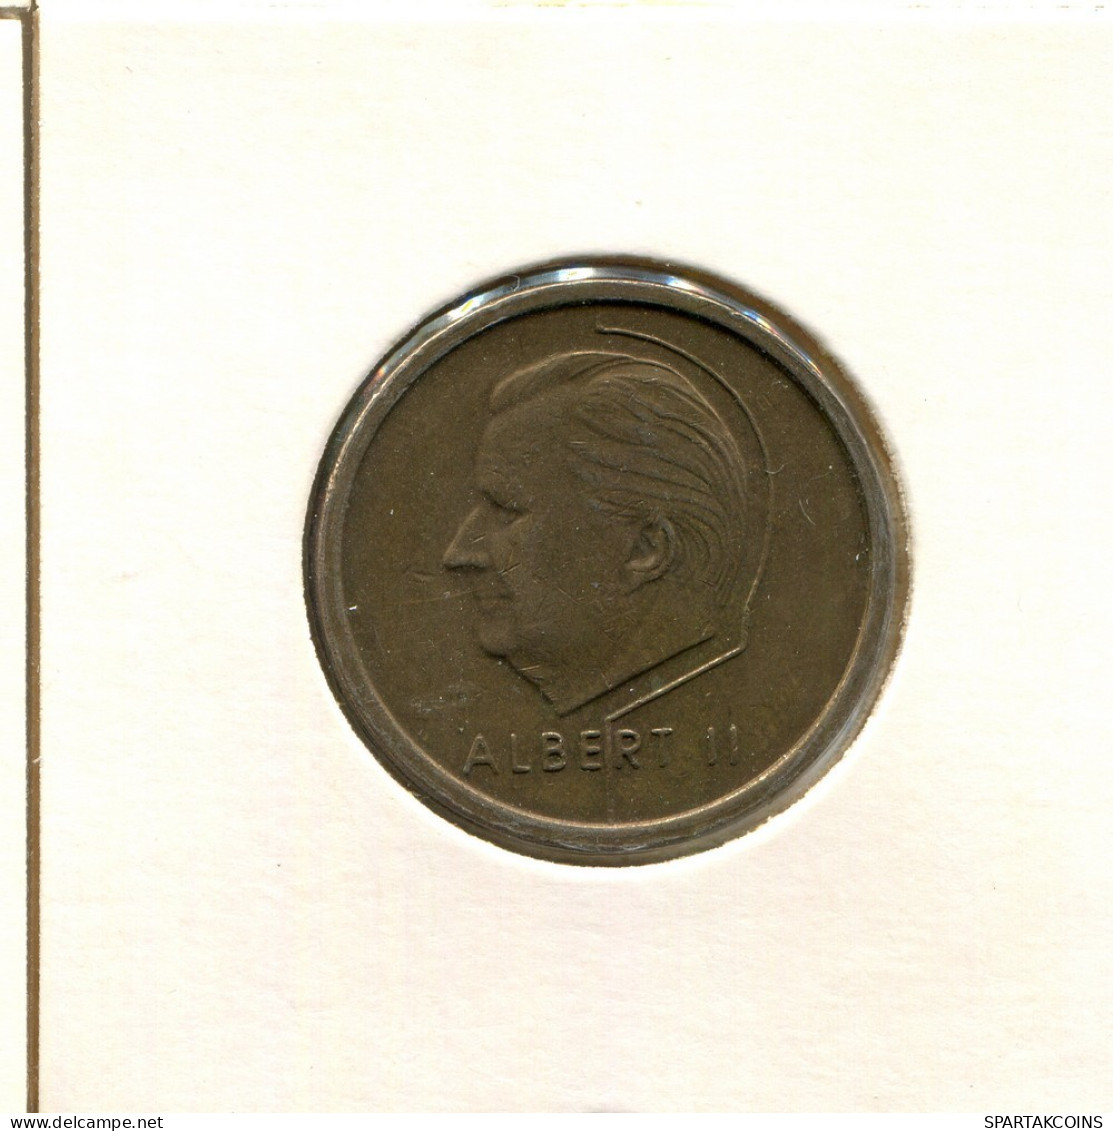 20 FRANCS 1996 DUTCH Text BELGIUM Coin #AU118.U.A - 20 Francs